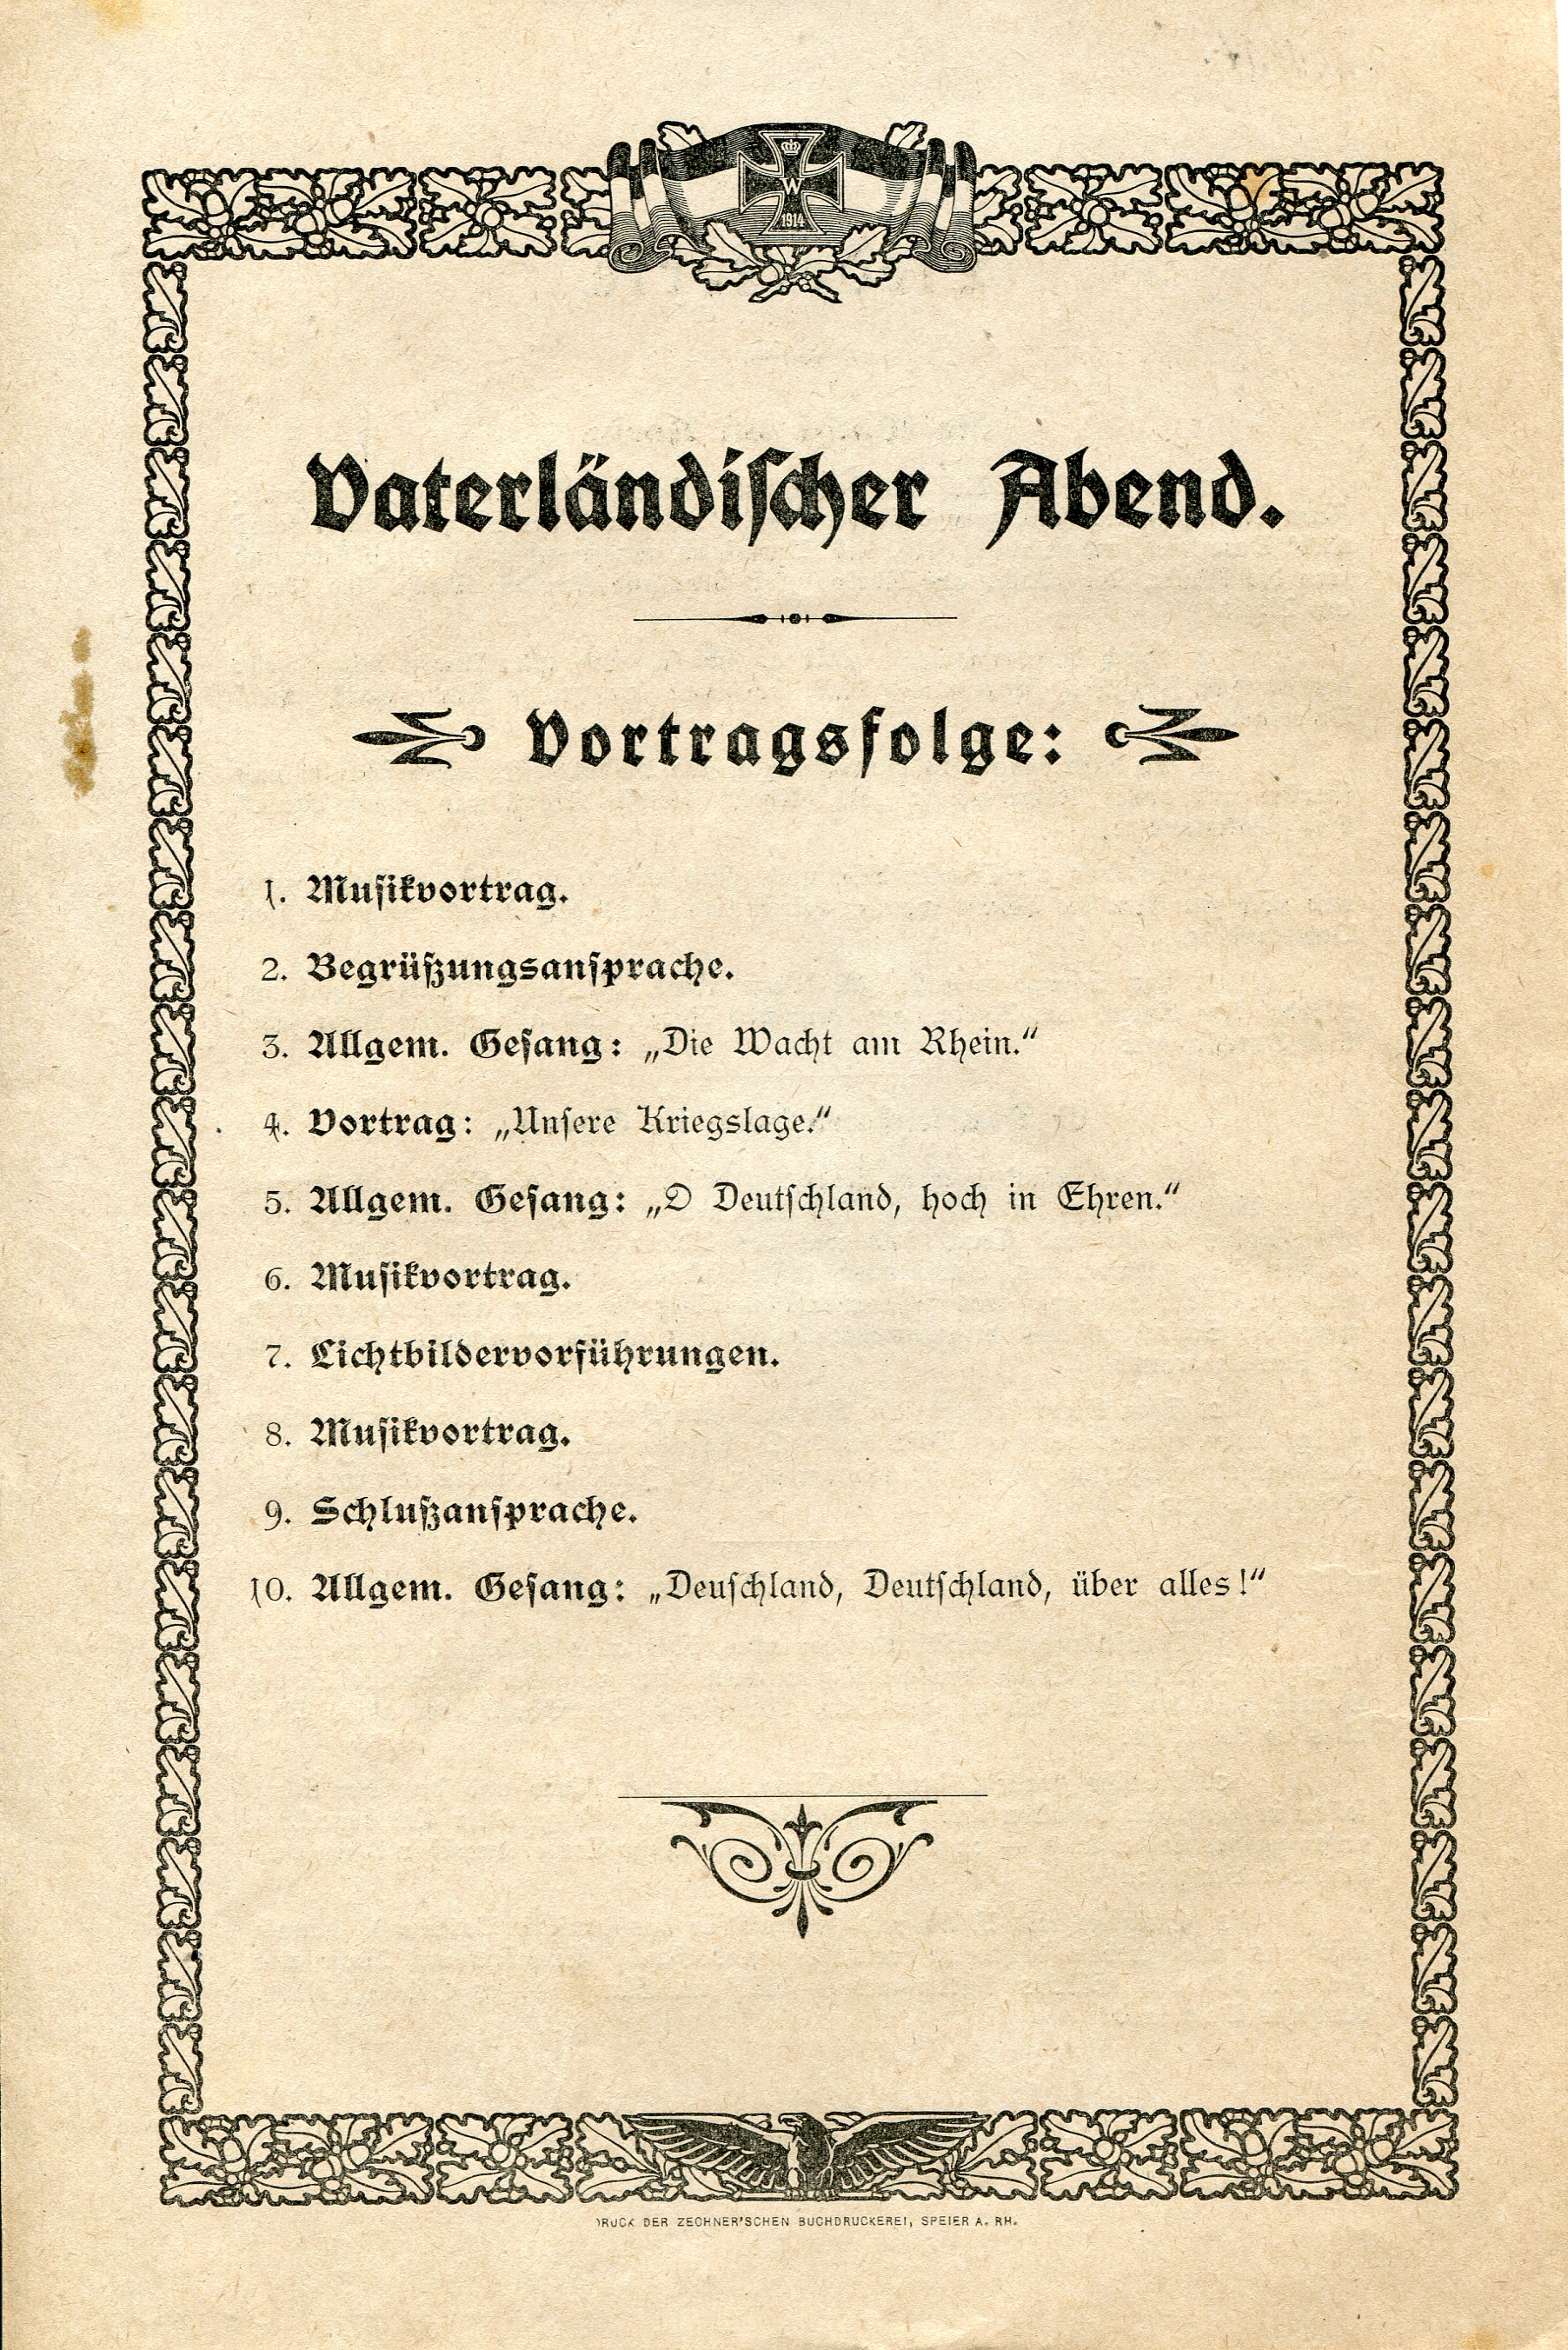 Vortragsfolge und Liedtextblatt "Vaterländischer Abend" (Historisches Museum der Pfalz, Speyer CC BY-NC-ND)